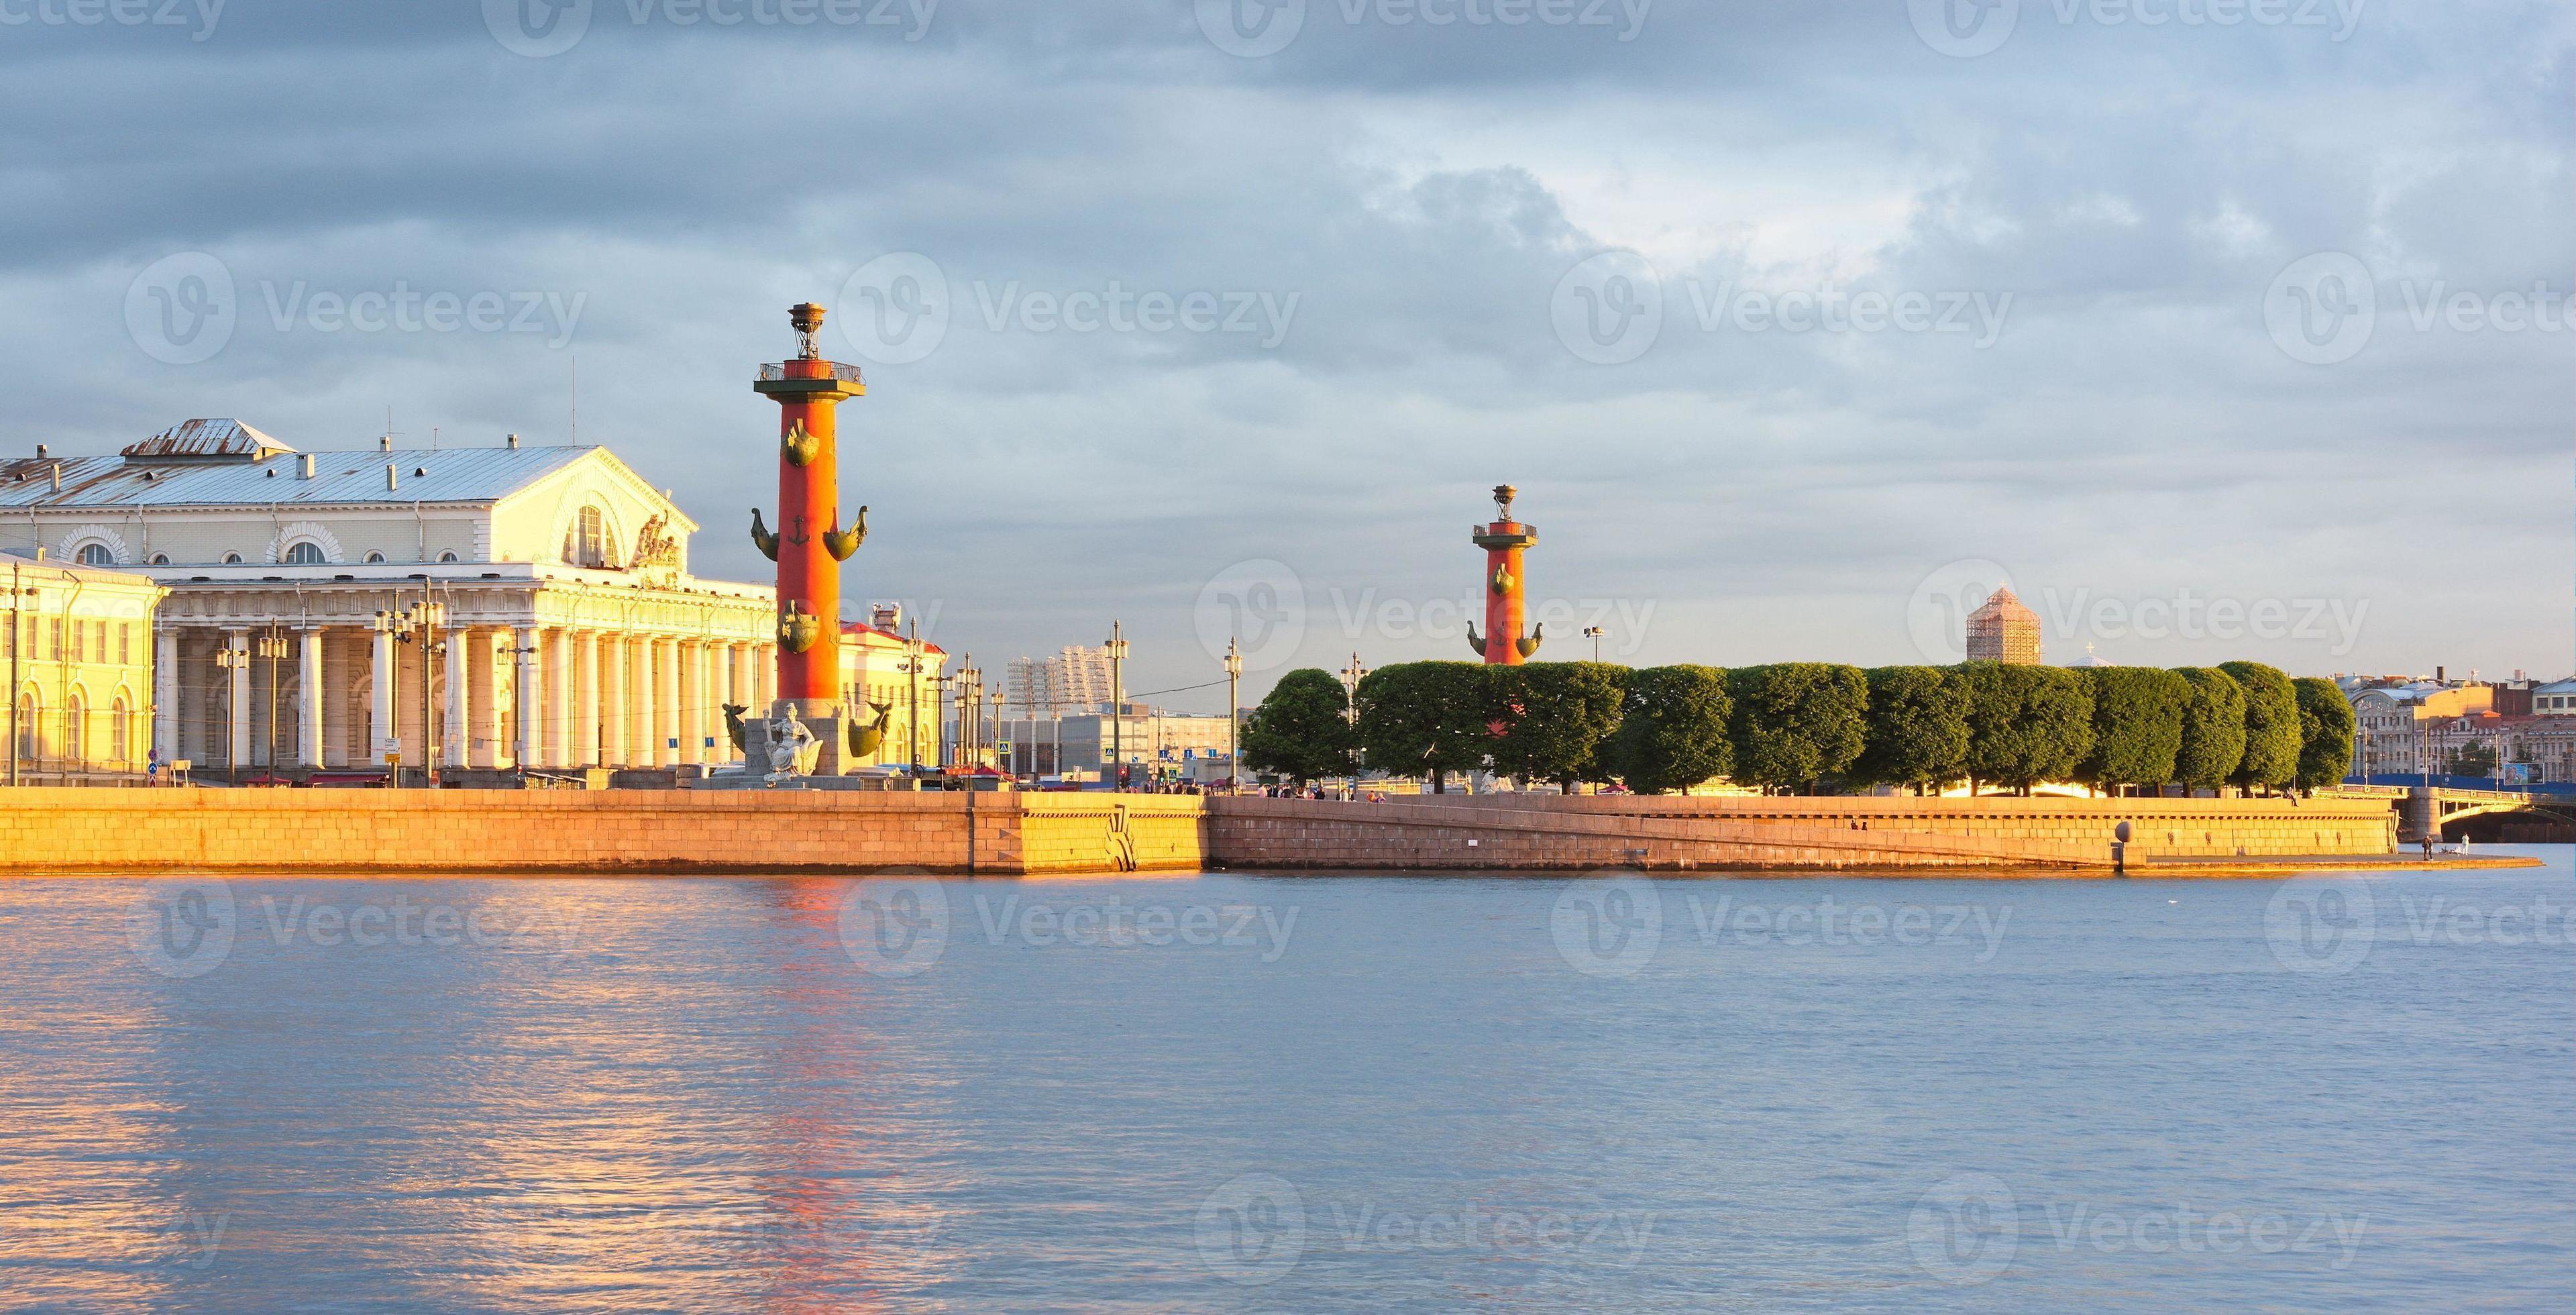 Île Vasilevsky, colonnes rostrales, Saint-Pétersbourg, Russie photo